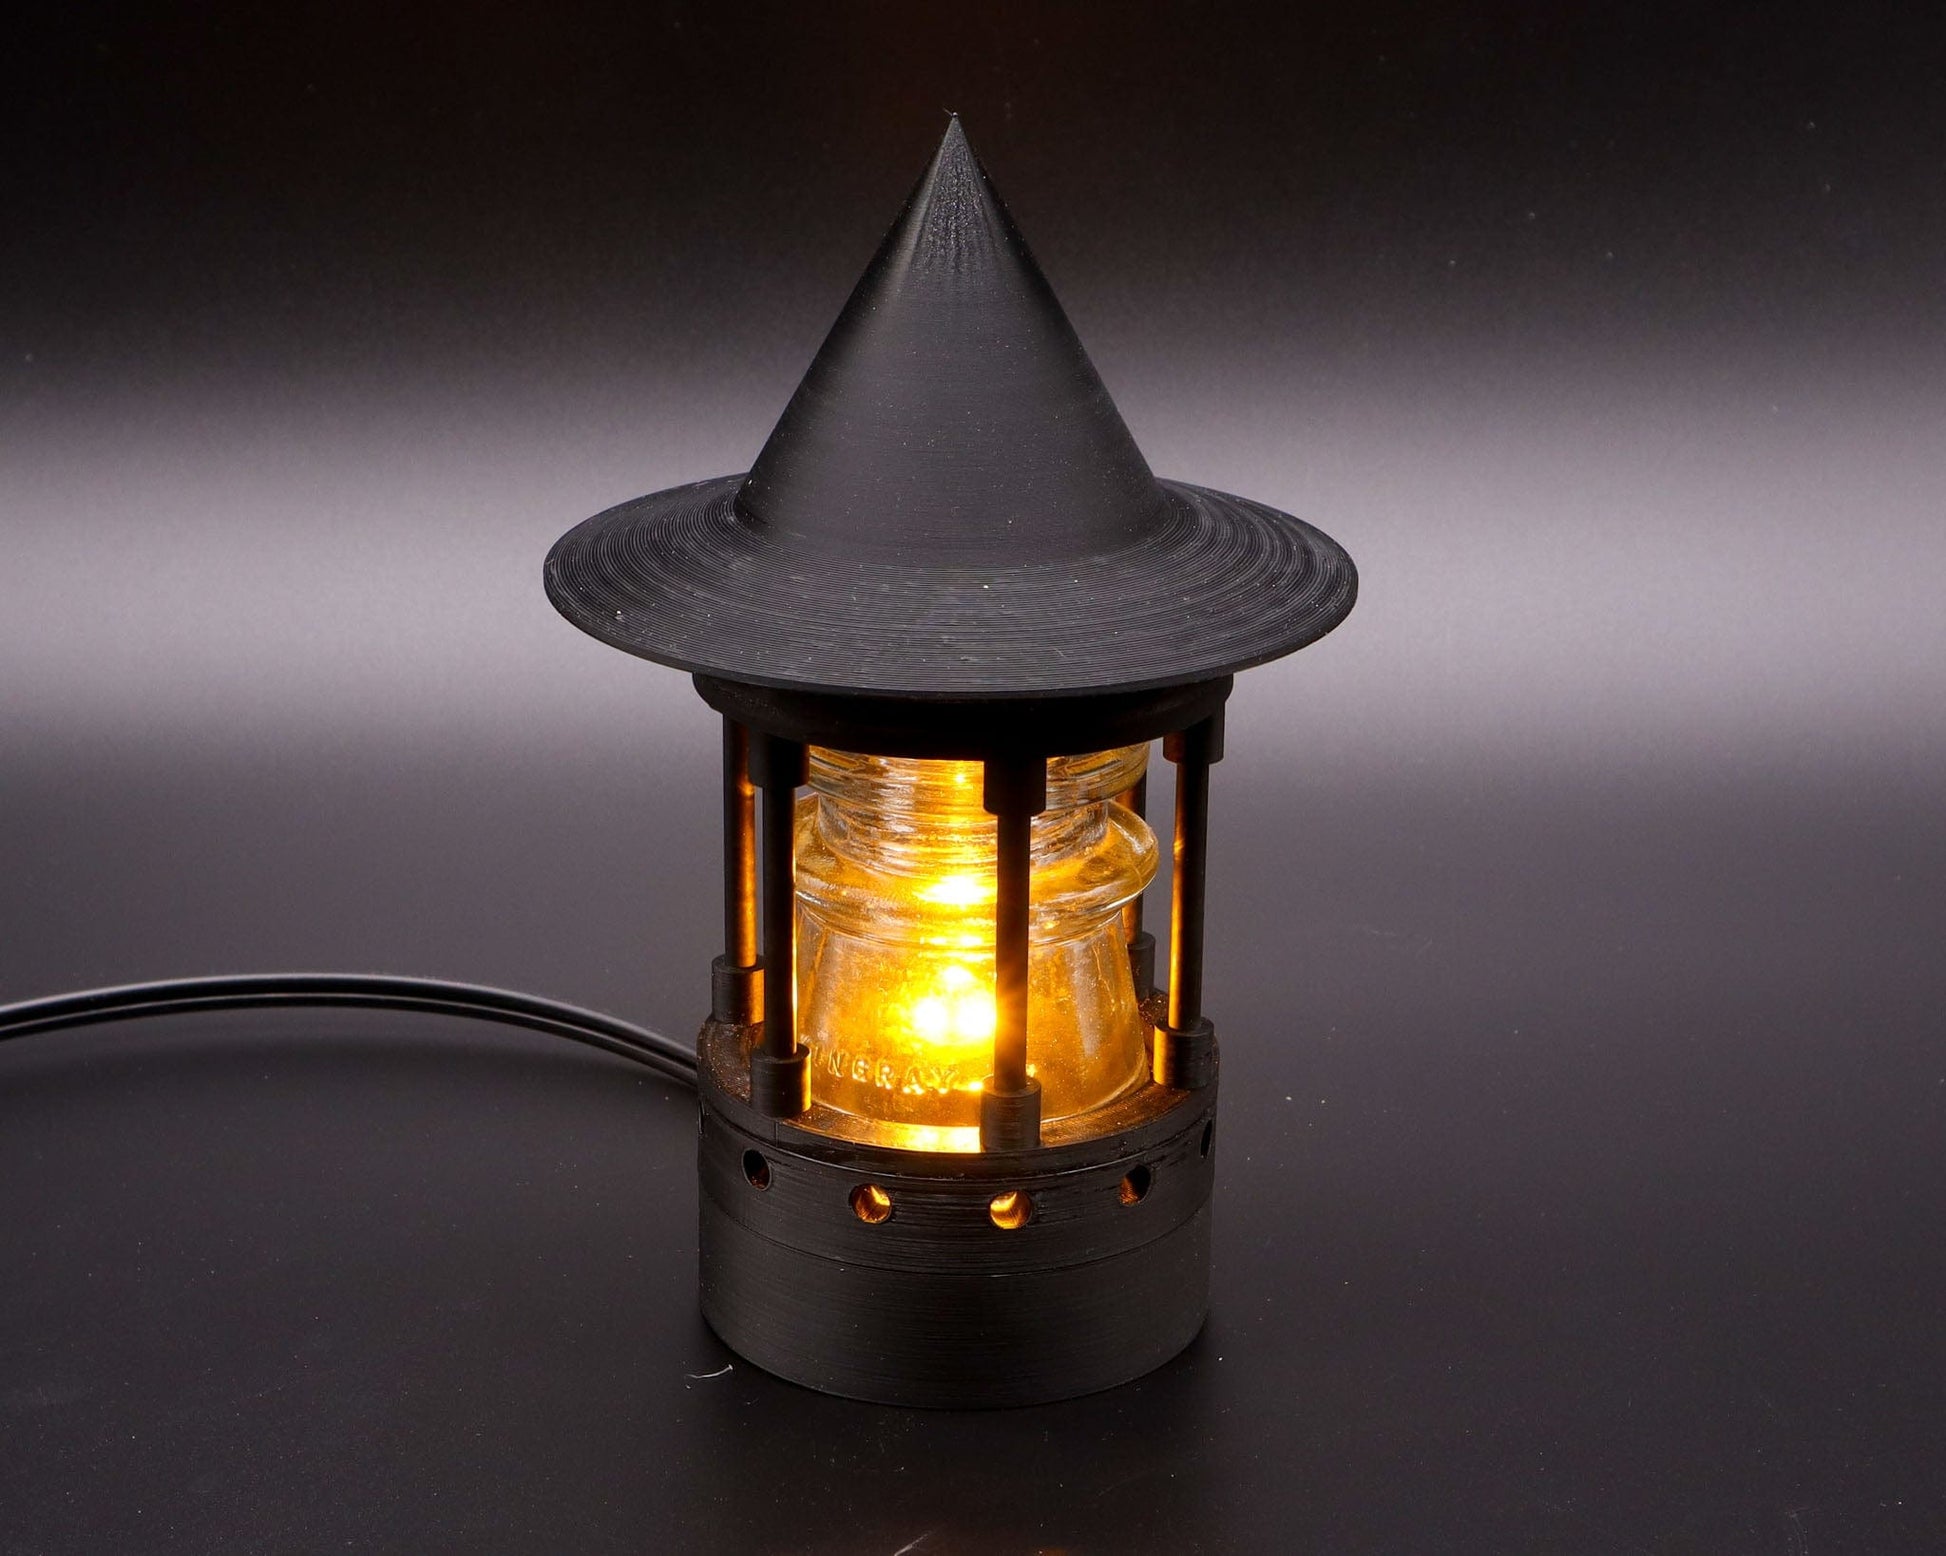 The Miner's Lamp - Low Voltage LED Landscape Light,12V AC/DC Lamp with –  LightAndTimeArt